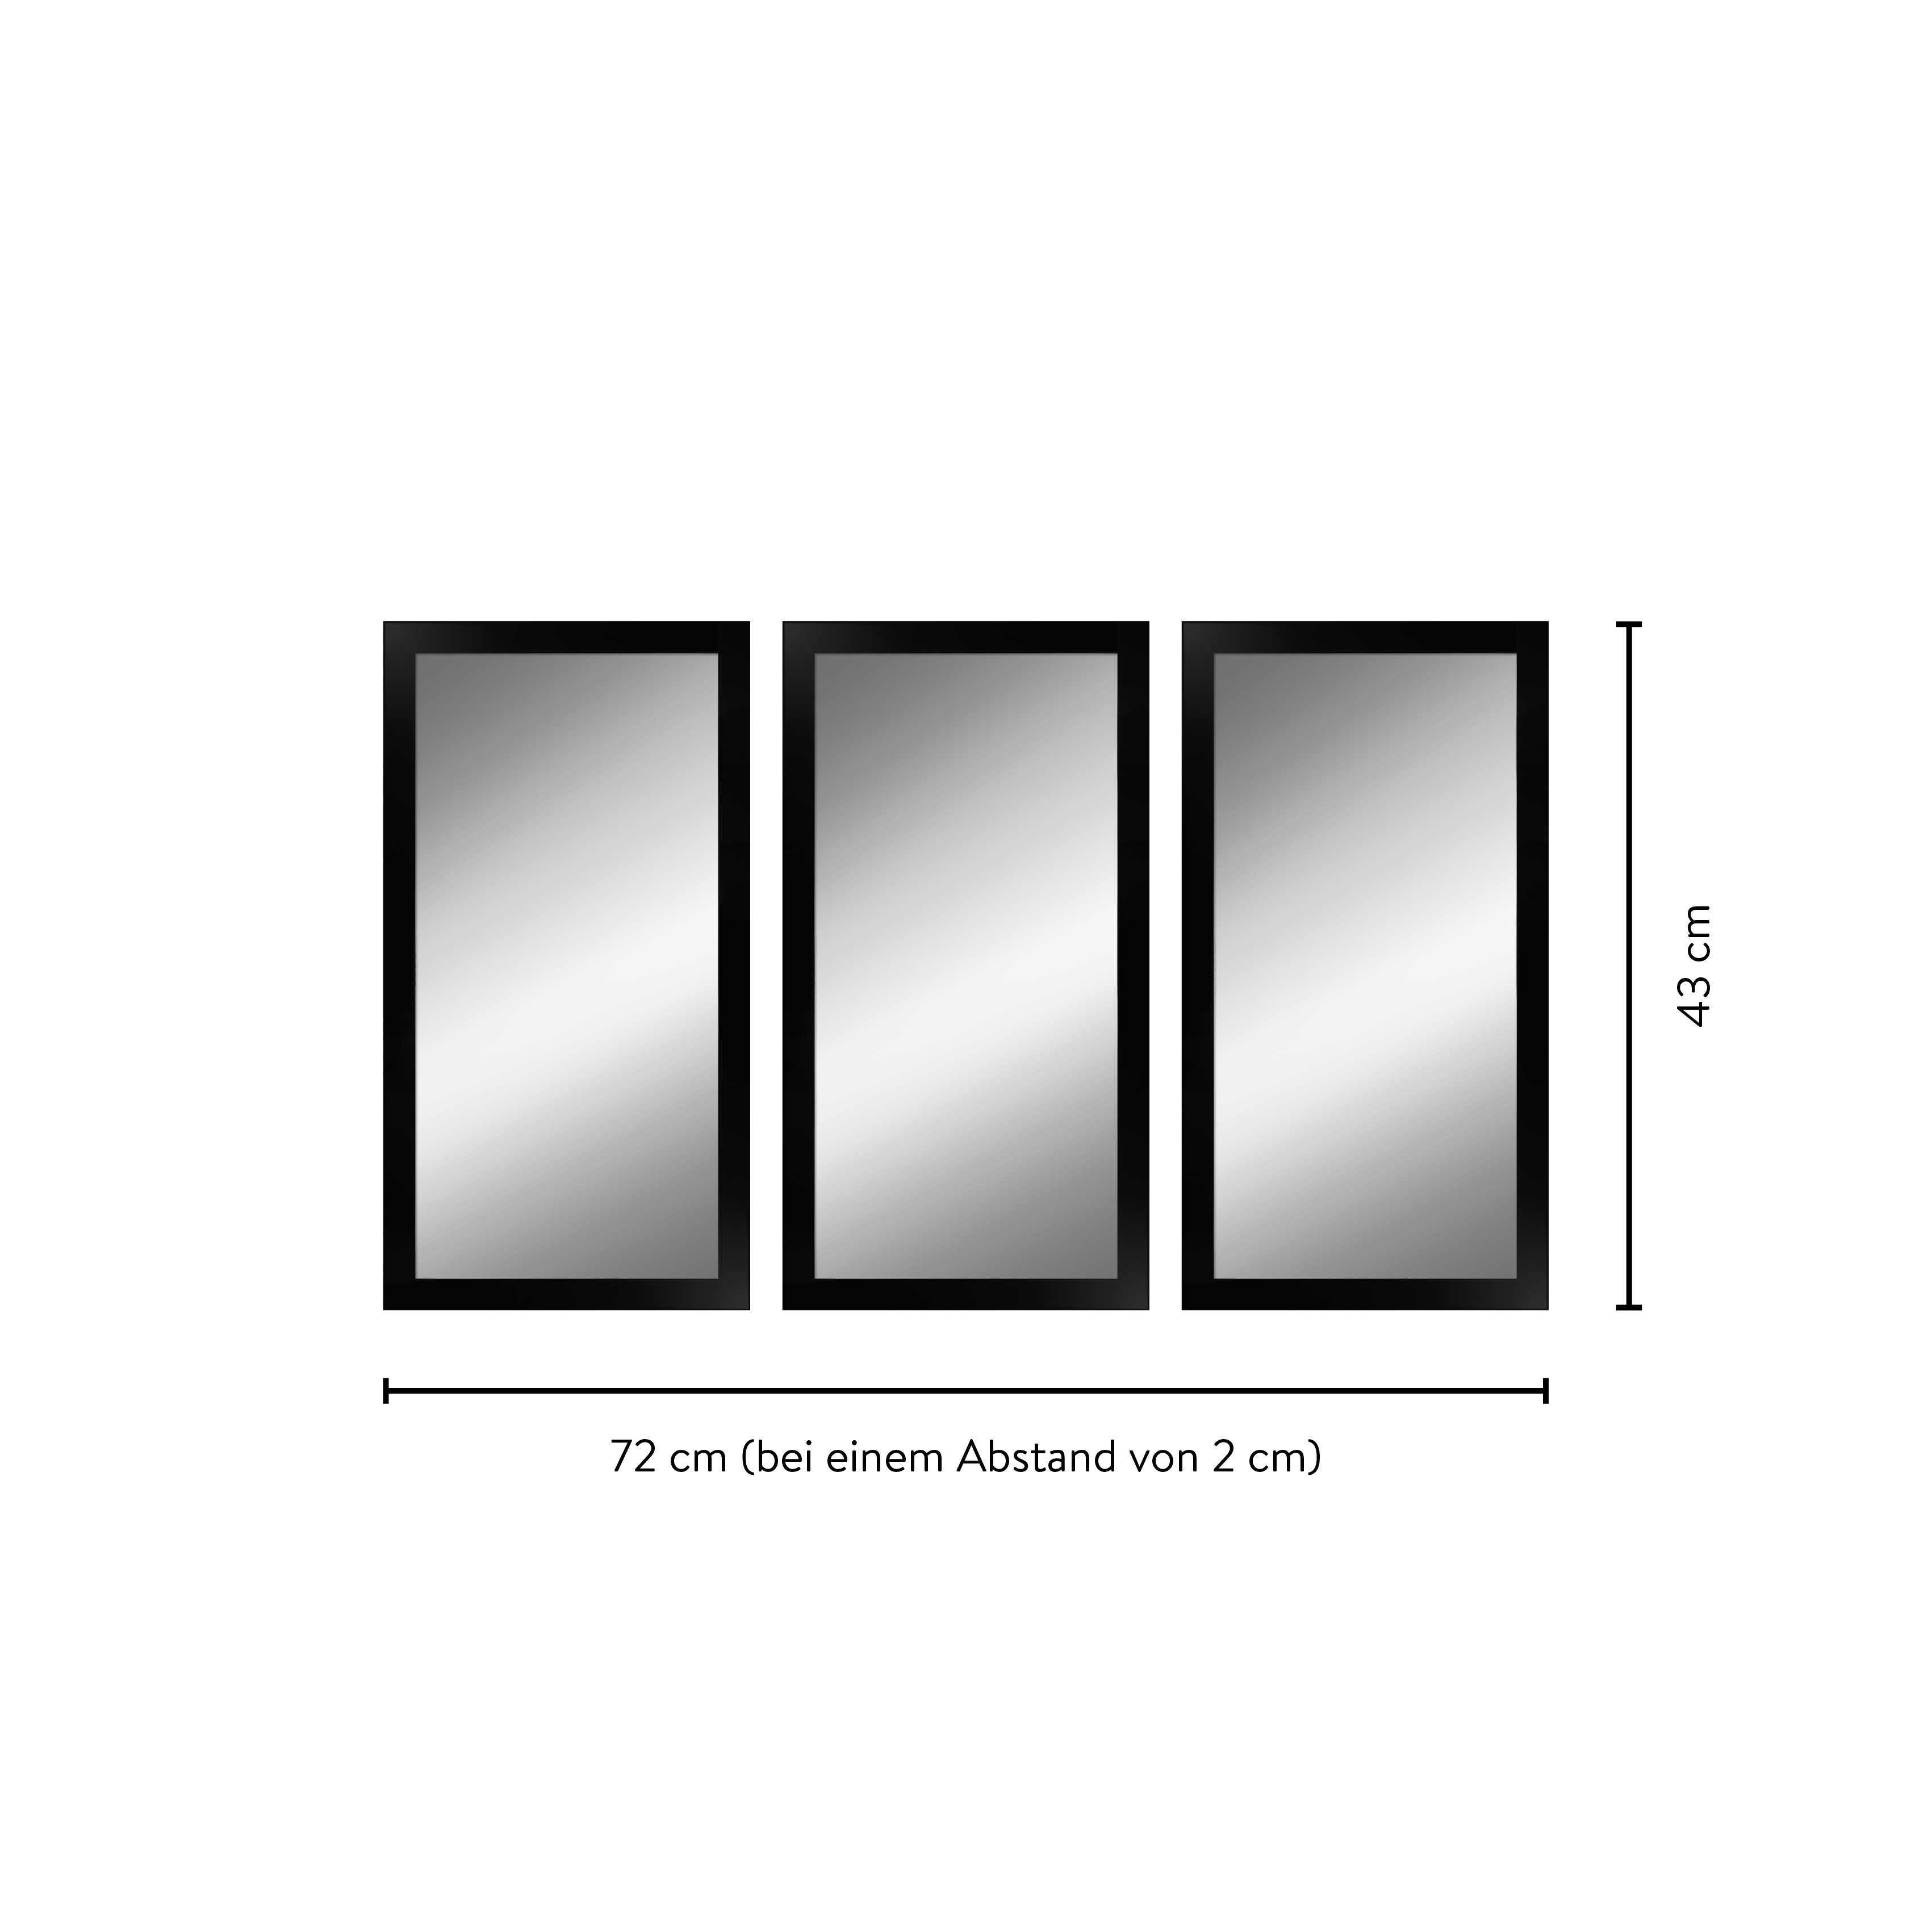 Maße eines Spiegelsets bestehend aus 3 rechteckigen Spiegeln mit Holzrahmen